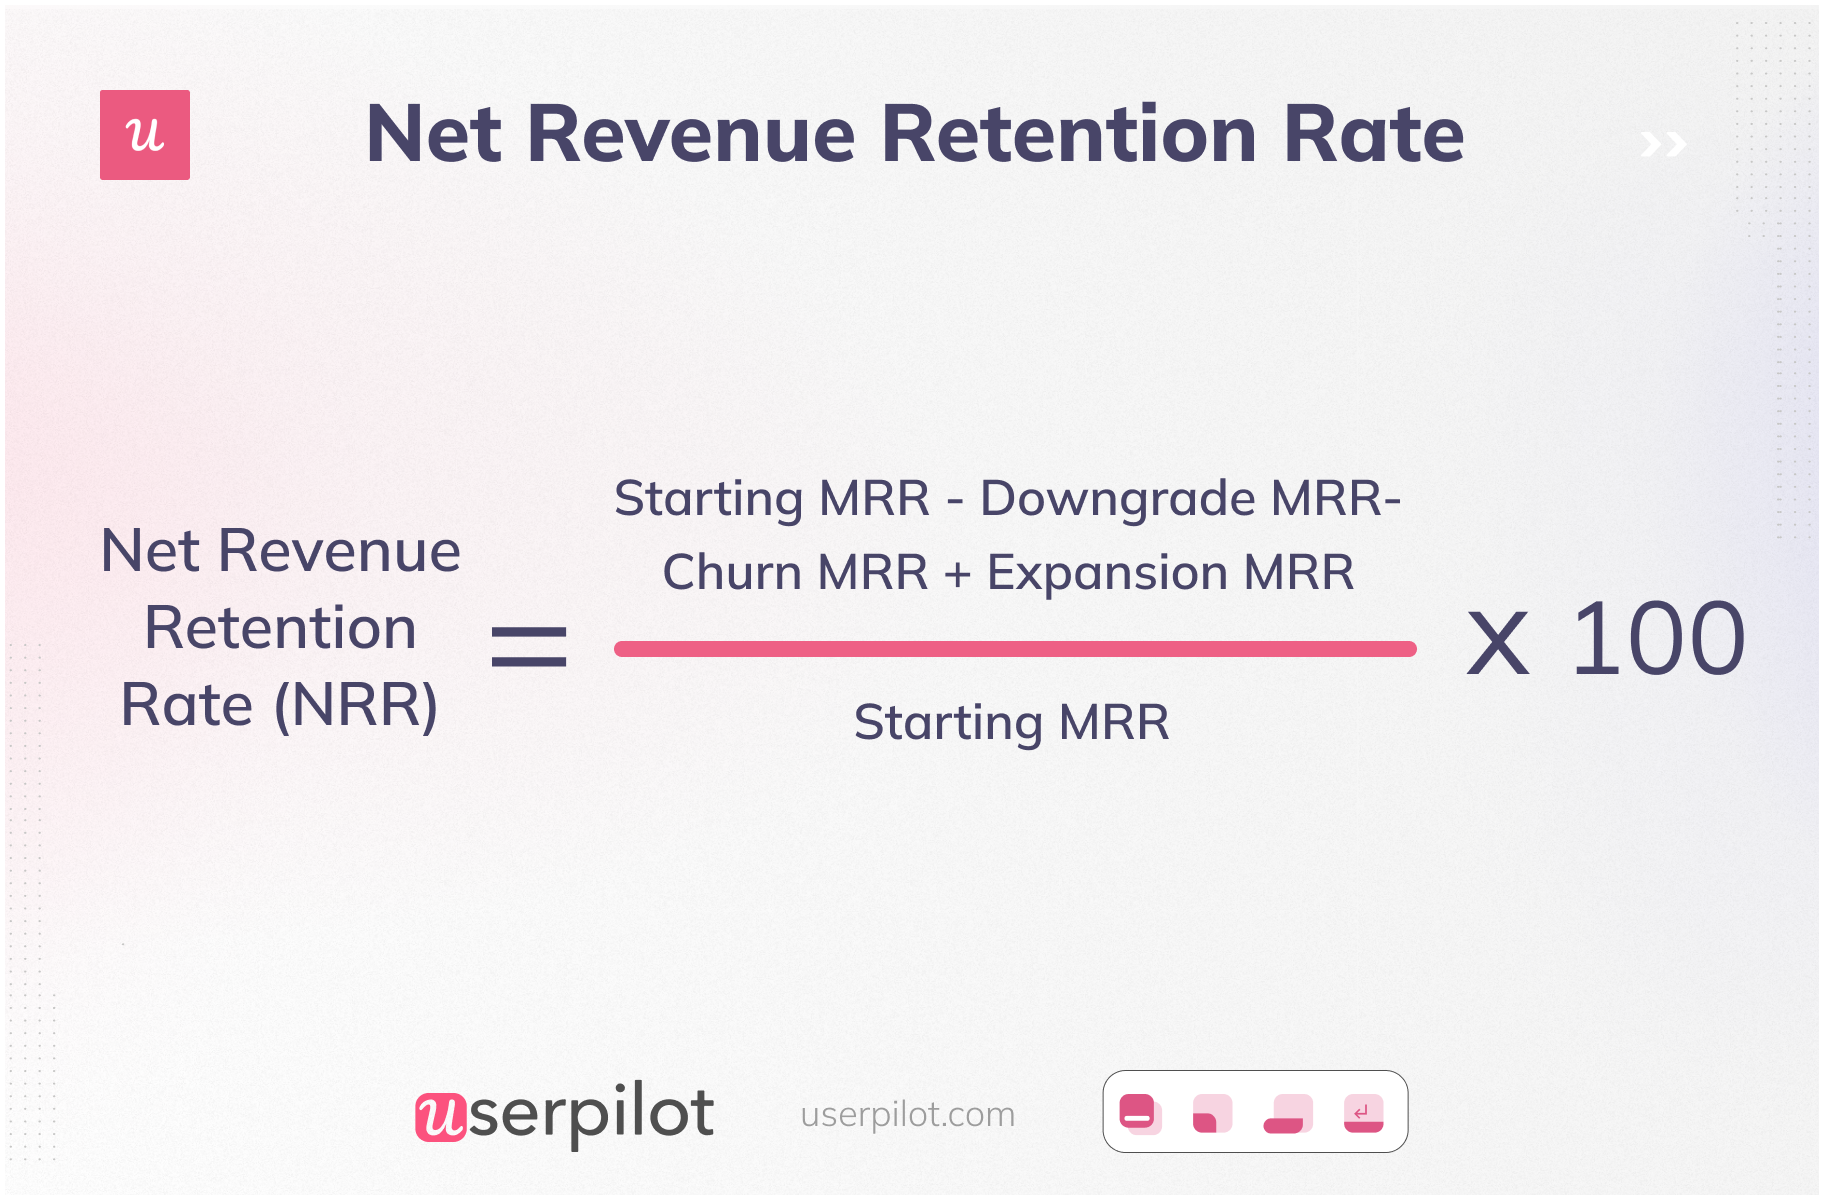 Net Revenue Retention Formula